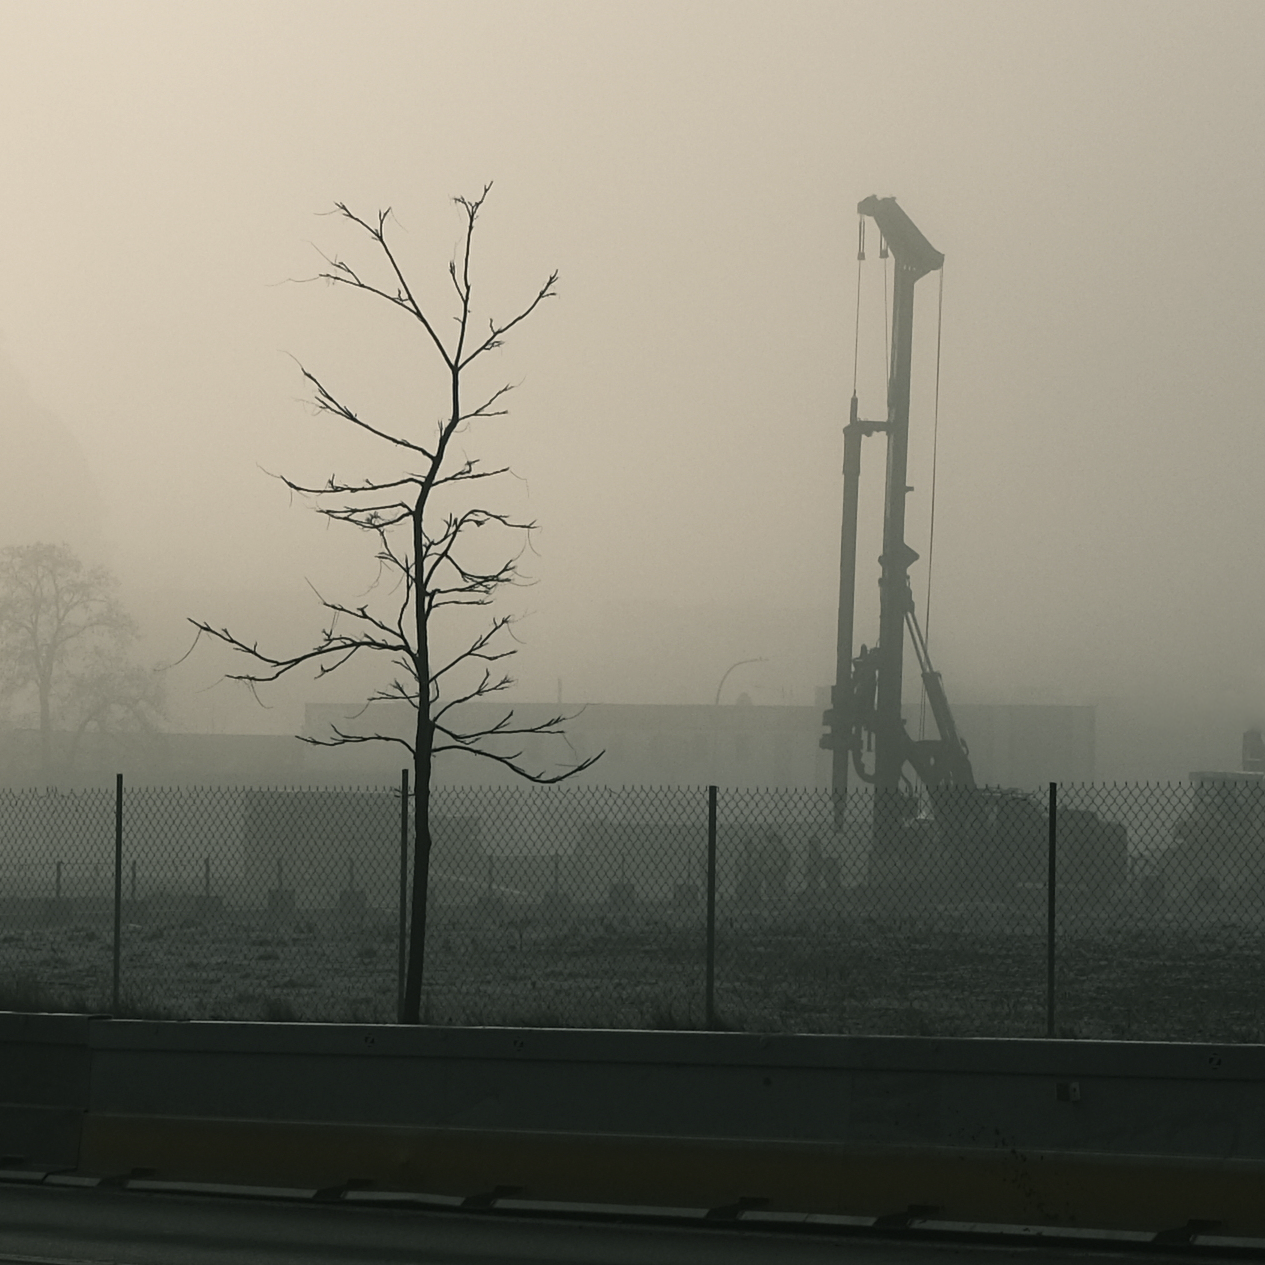 Image shot on a foggy morning